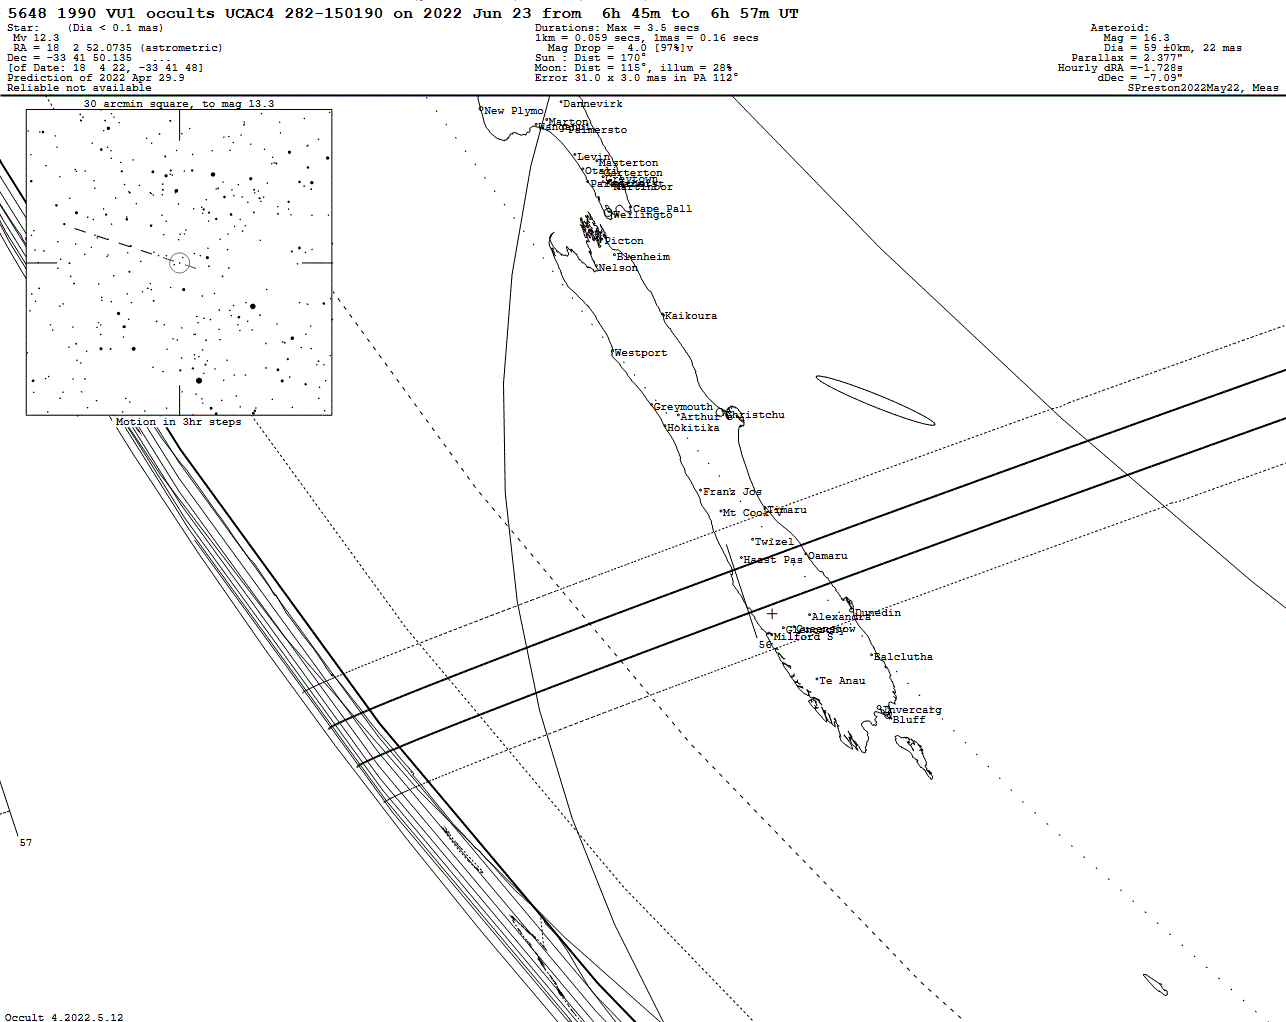 1990 VU1 Update Map